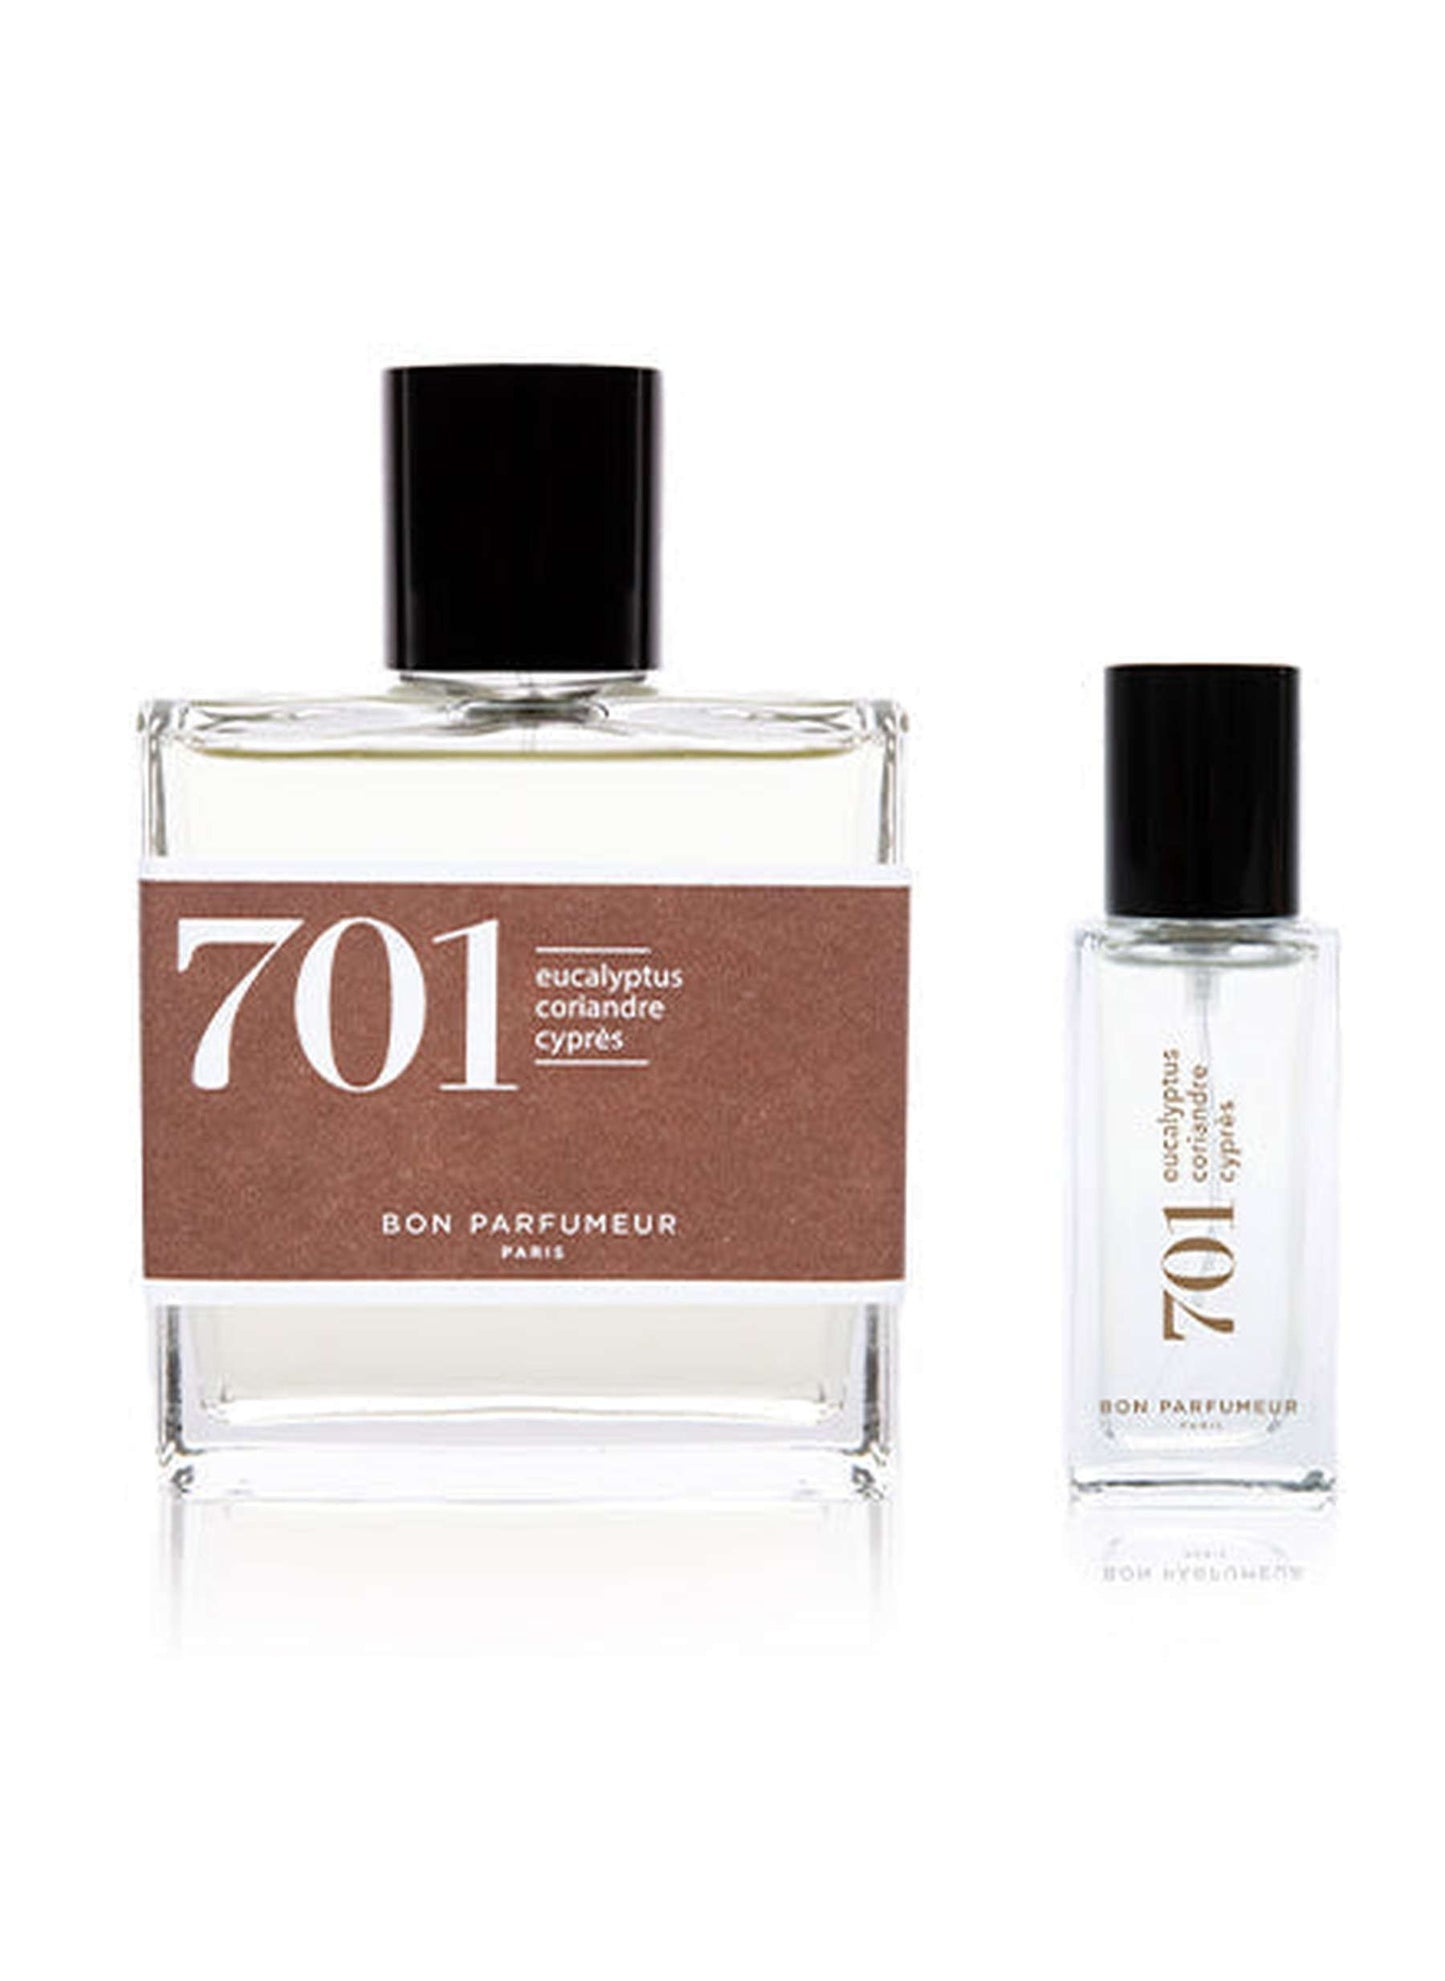 Eau de parfum 701: eucalyptus, coriander and cypress